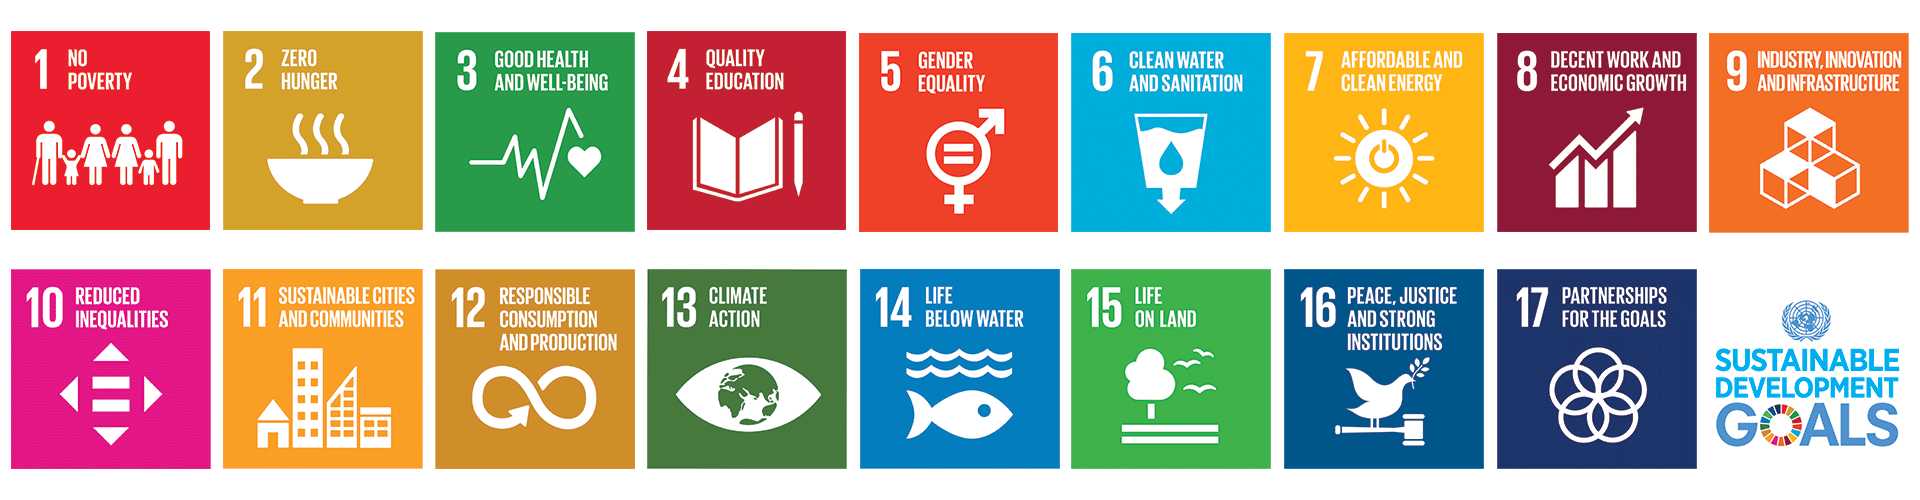 SDGs-banner - IDEAS For Us